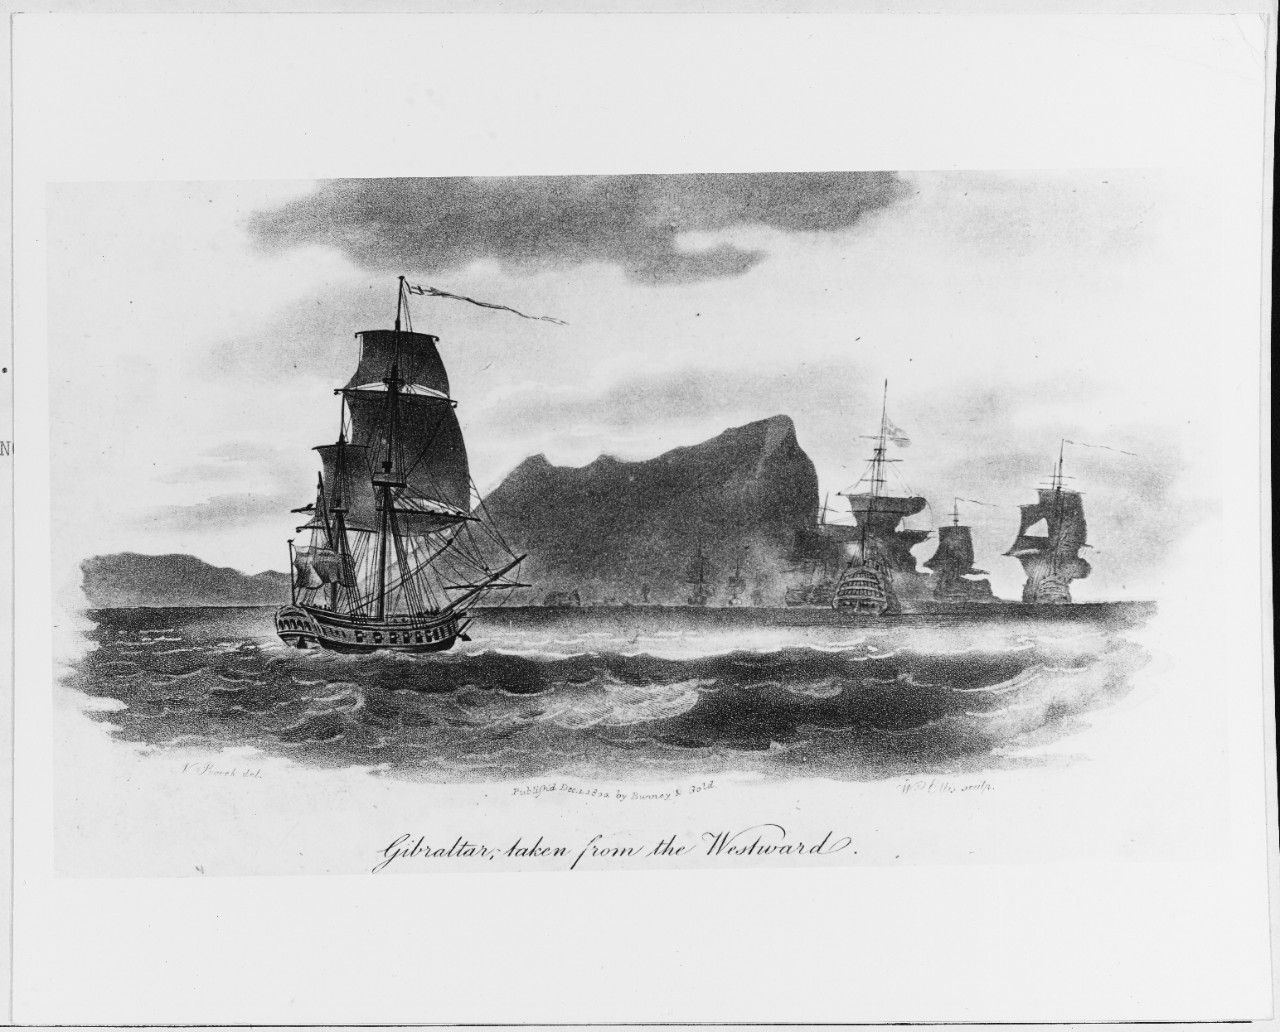 "Gibraltar, taken from the Westward."